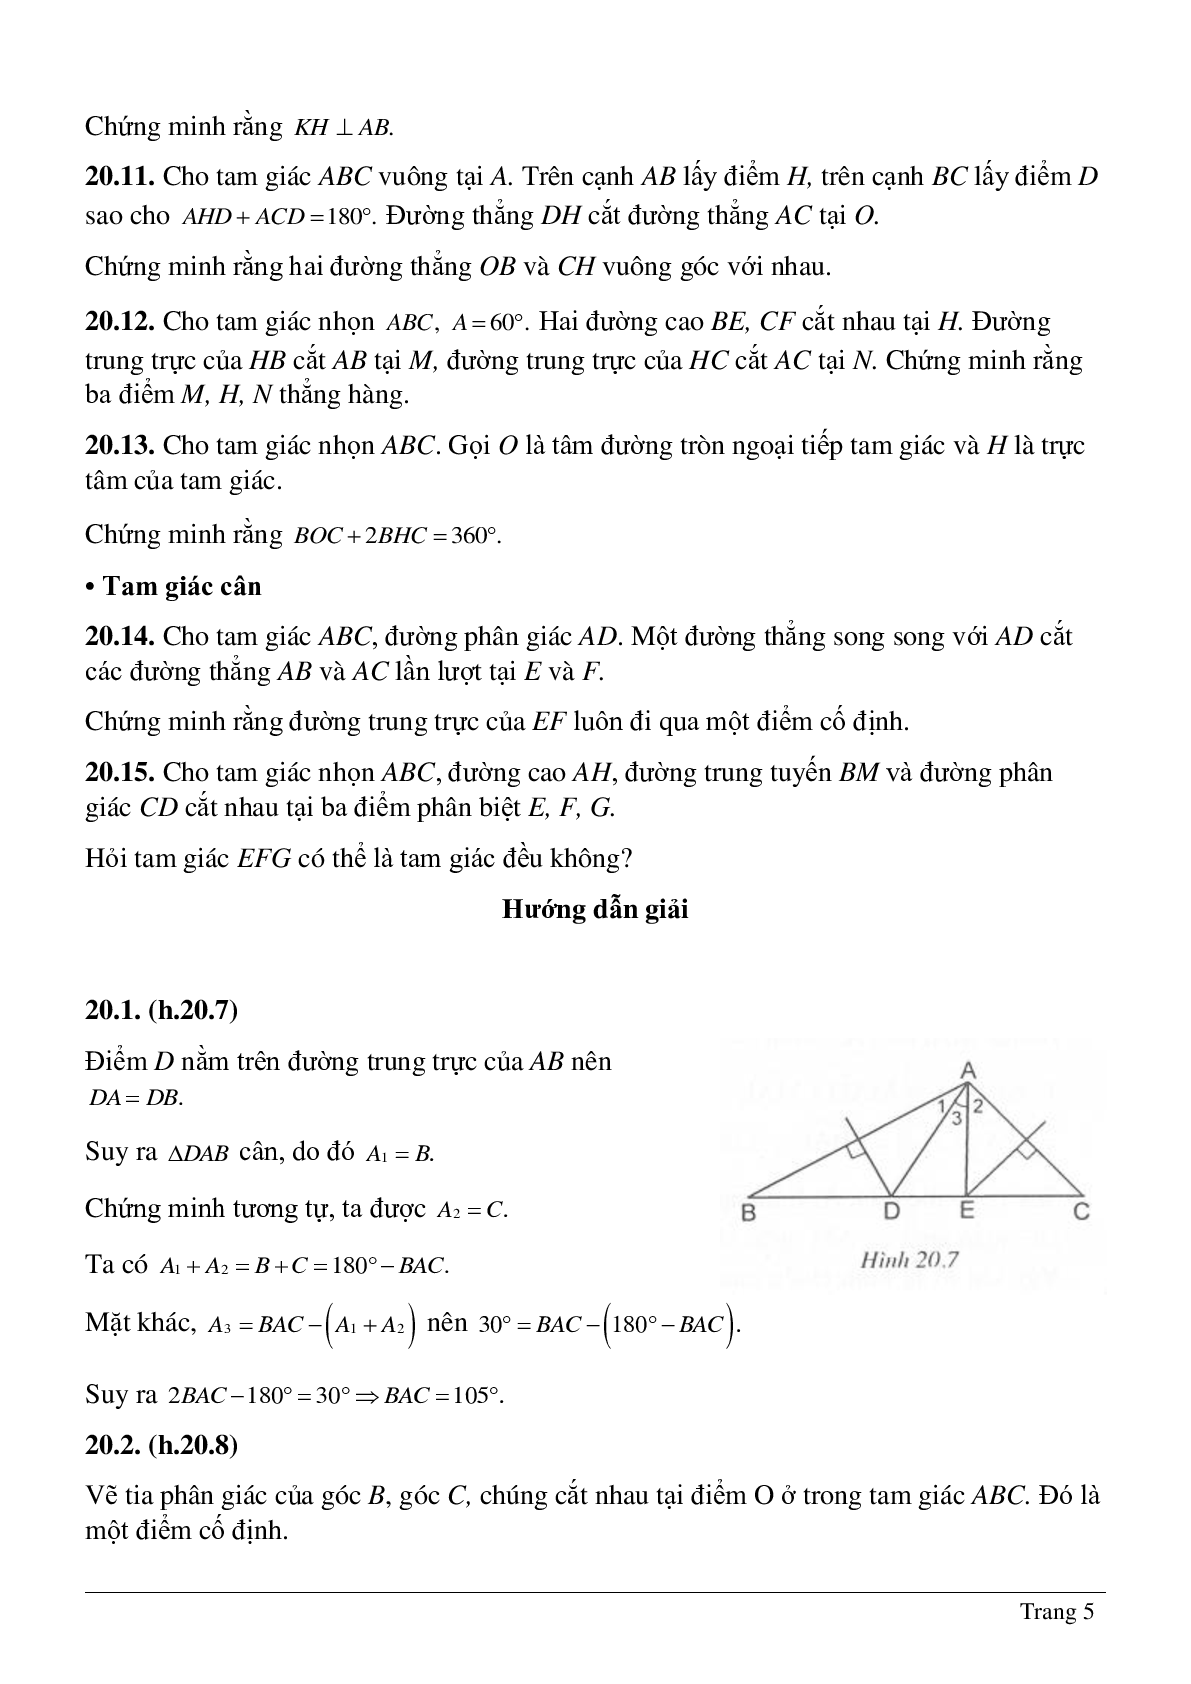 Tổng hợp những bài tập về Tính chất ba đường trung trực, ba đường cao của tam giác có lời giải (trang 5)